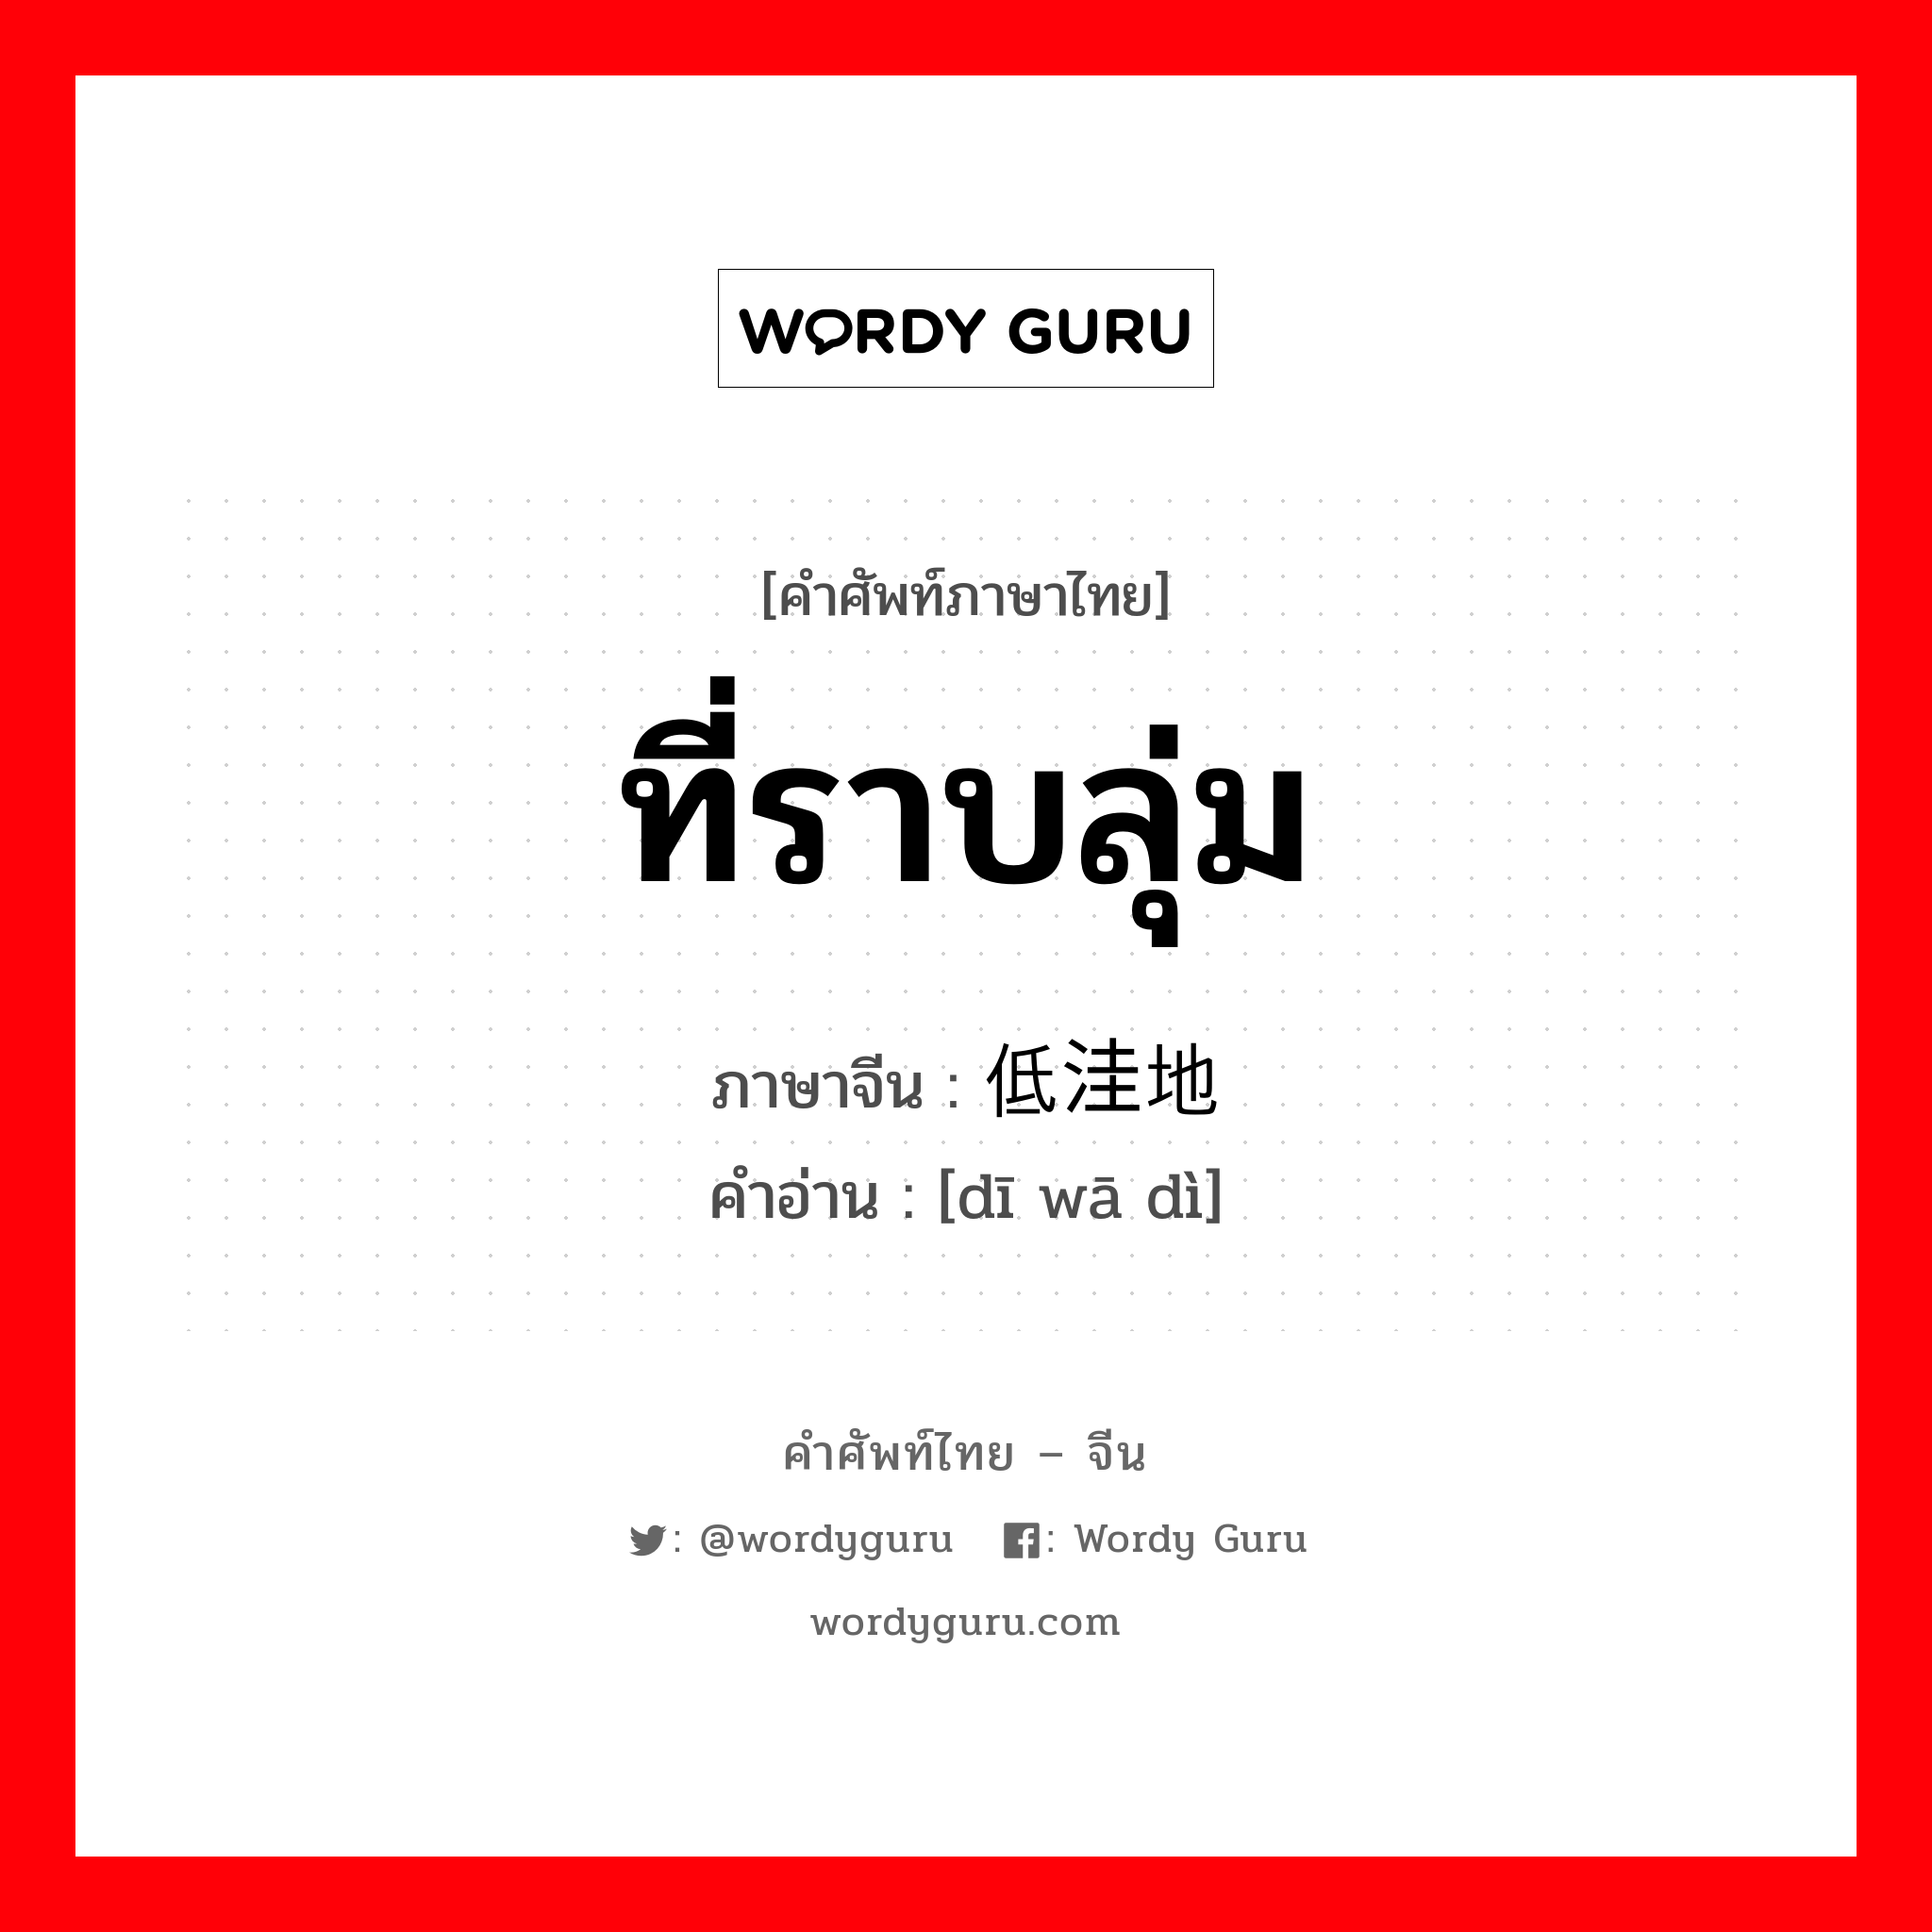 ที่ราบลุ่ม ภาษาจีนคืออะไร, คำศัพท์ภาษาไทย - จีน ที่ราบลุ่ม ภาษาจีน 低洼地 คำอ่าน [dī wā dì]